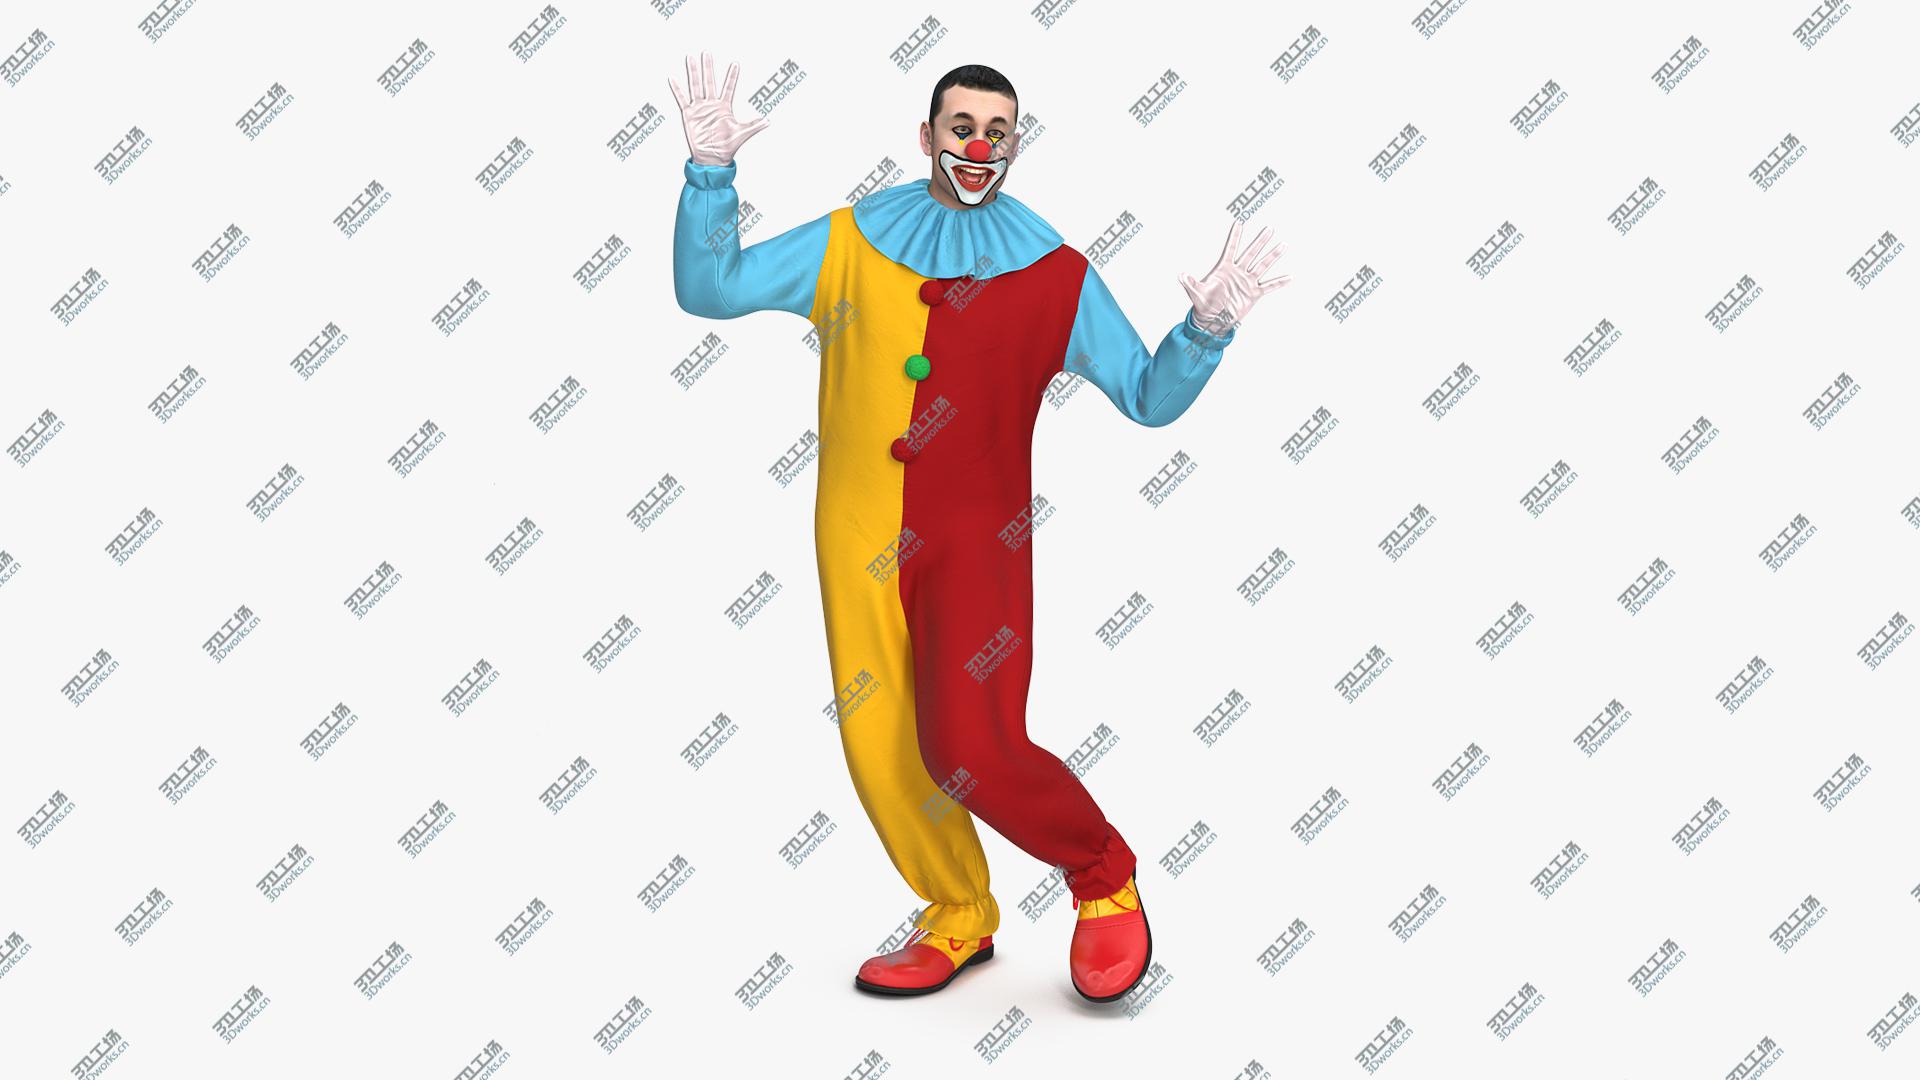 images/goods_img/202104093/3D Circus Clown Dancing Pose/1.jpg